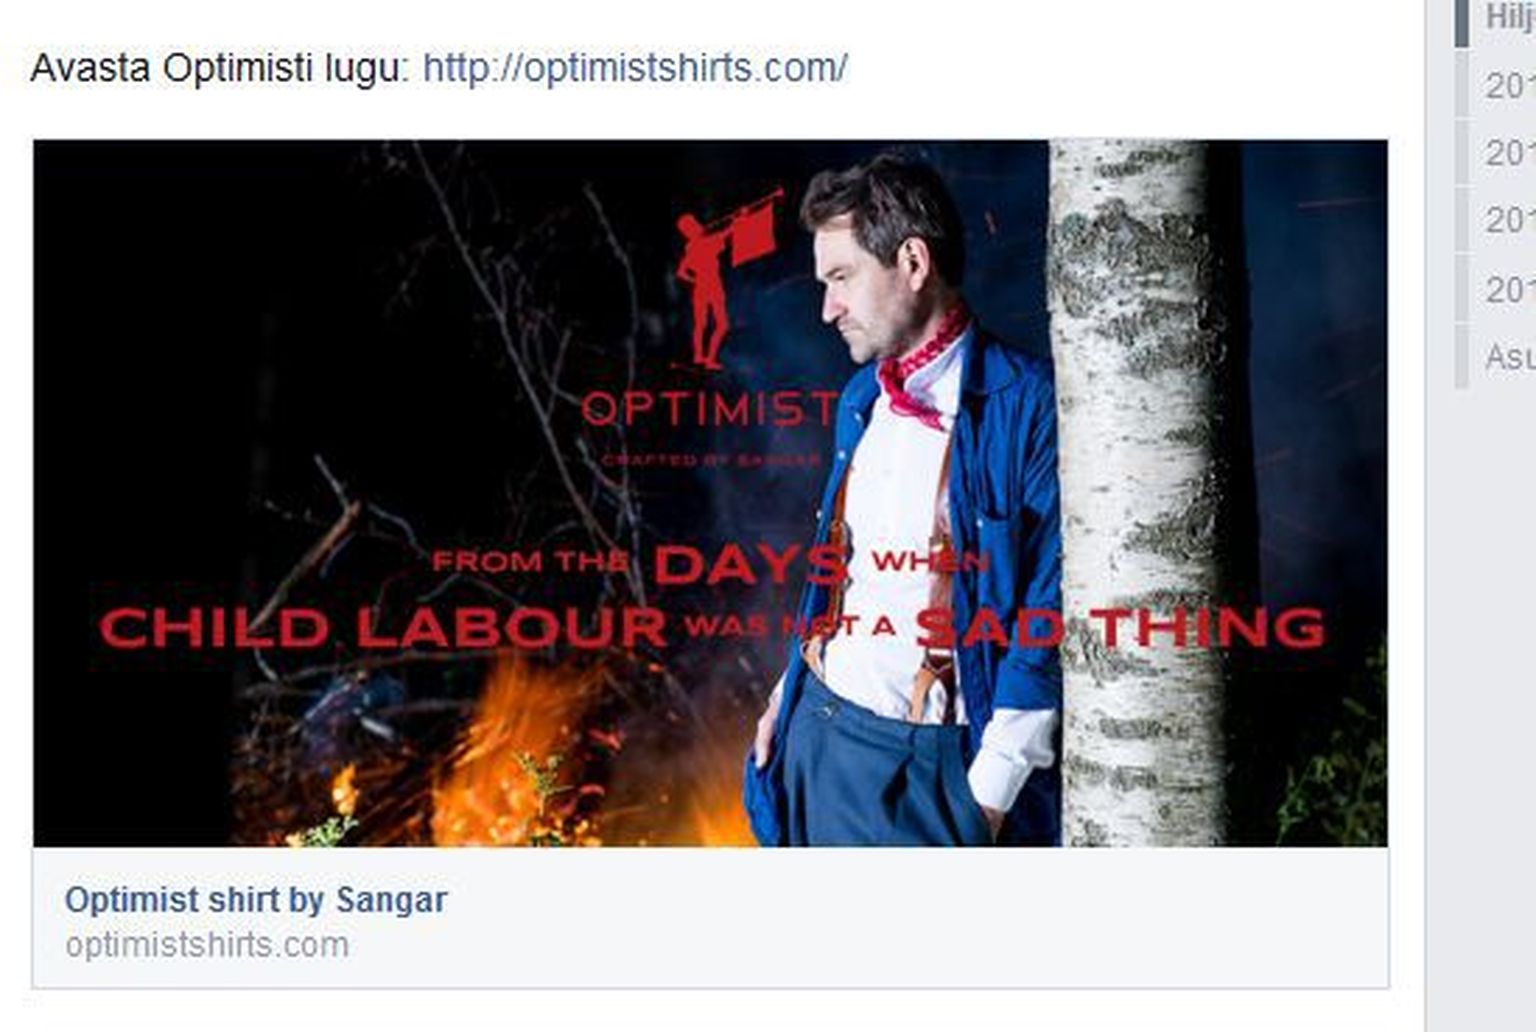 Sangari uue särgi reklaamis püüti orjapidamise üle nalja visata.